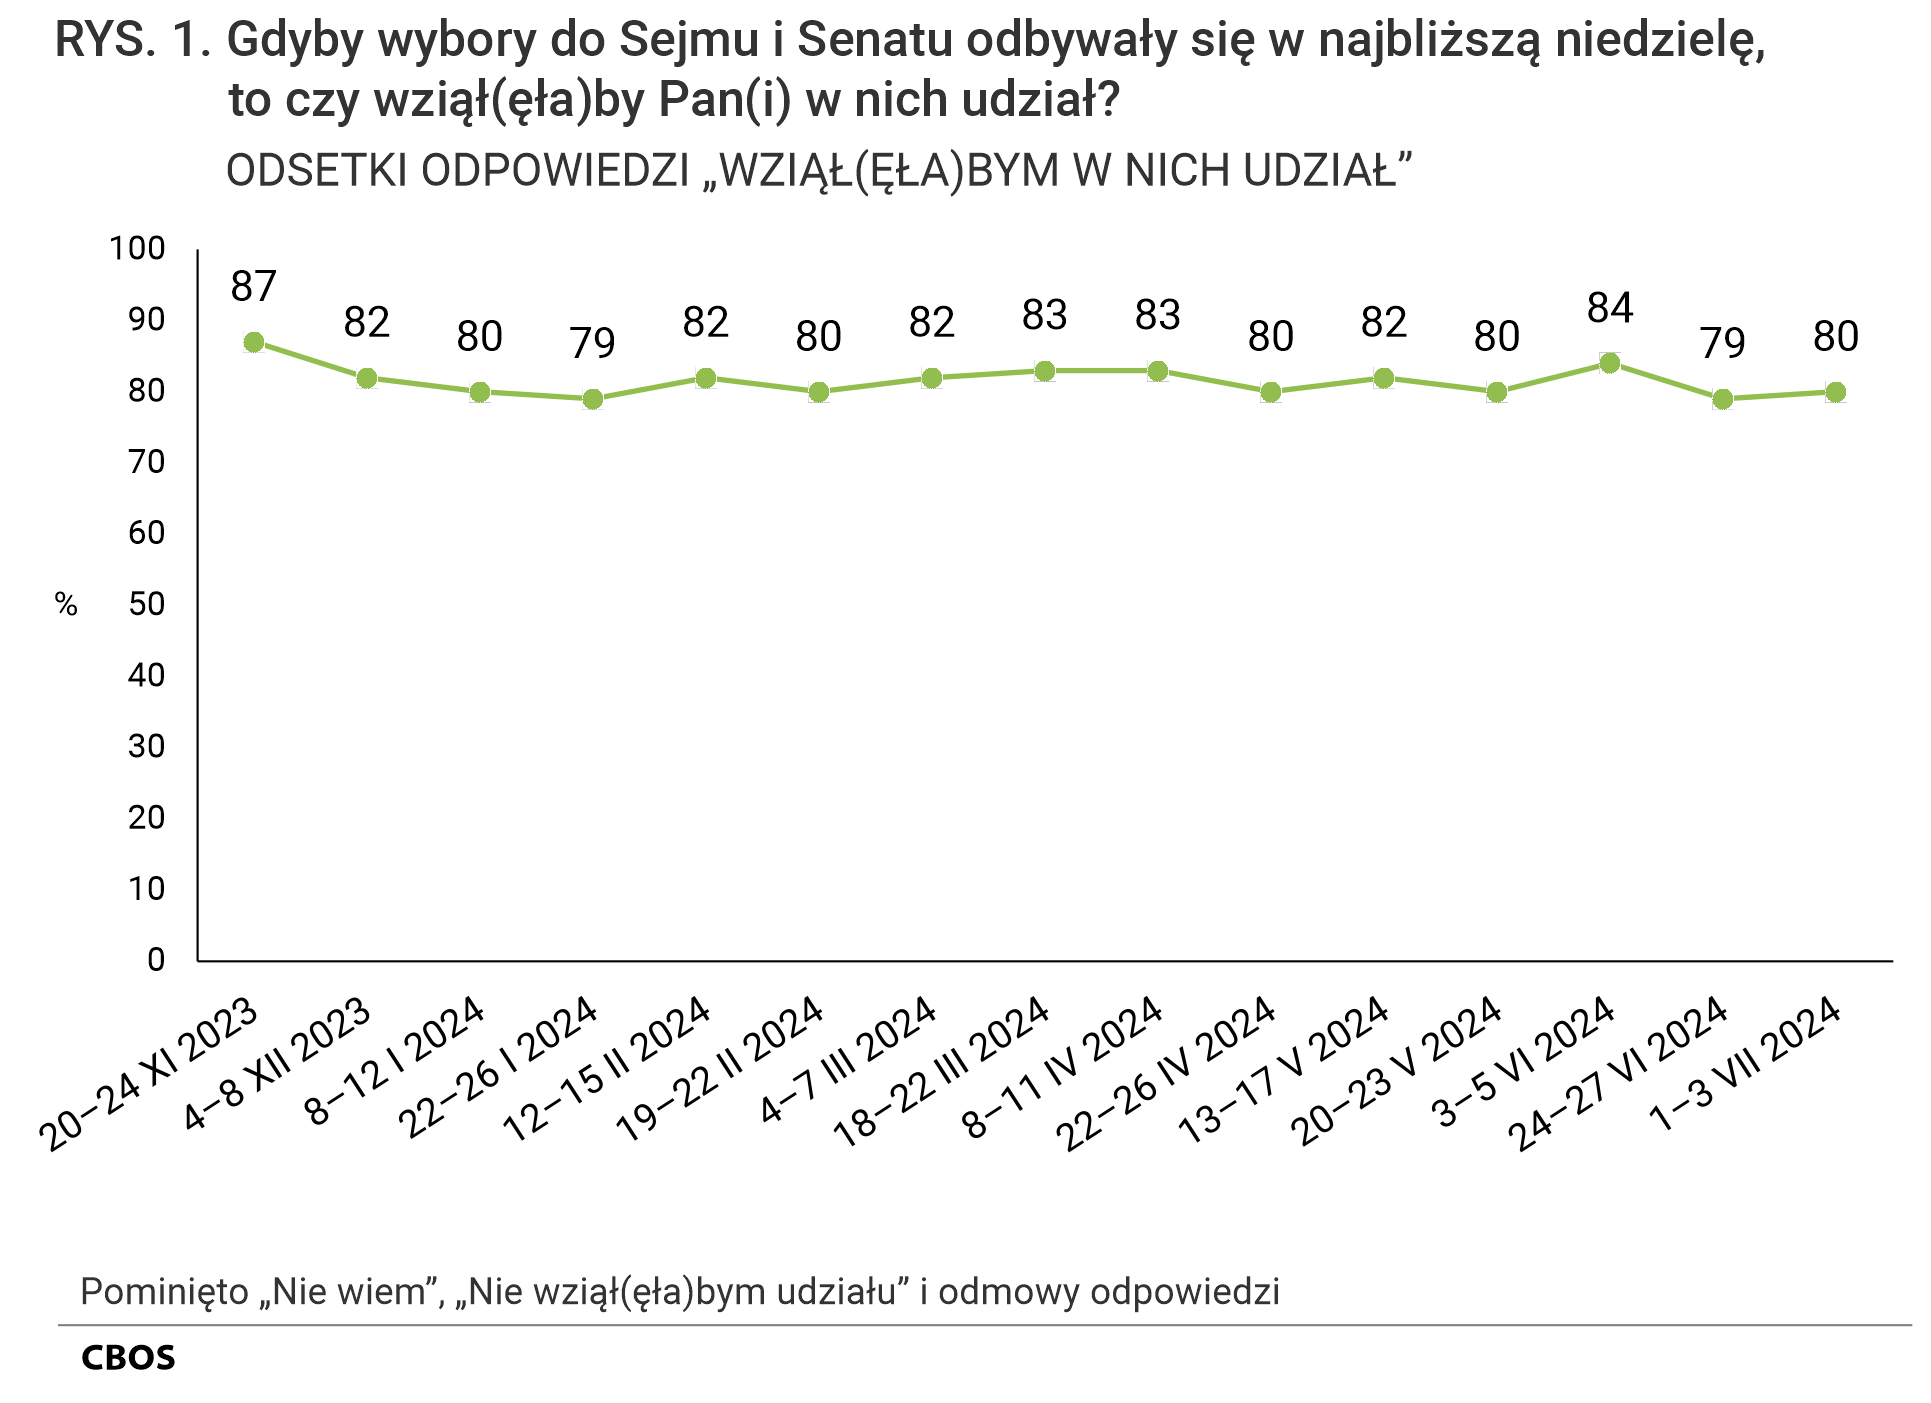 Rysunek 1 Gdyby wybory do Sejmu i Senatu odbywały się w najbliższą niedzielę, to czy wziąłby Pan (wzięłaby Pani) w nich udział? Odsetki odpowiedzi „Wziąłbym (Wzięłabym) w nich udział” według terminów badań. Pominięto odpowiedzi „Nie wiem”, „Nie wziąłbym (nie wzięłabym) udziału” i odmowy odpowiedzi. 20–24 listopada 2023 - 87%, 4–8 grudnia 2023 - 82%, 8–12 stycznia  2024 - 80%, 22–26 stycznia   2024 - 79%, 12–15 lutego 2024 - 82%, 19–22 lutego 2024 - 80%, 4–7 marca 2024 - 82%, 18–22 marca 2024 - 83%, 8–11 kwietnia 2024 - 83%, 22–26 kwietnia 2024 - 80%, 13–17 maja 2024 - 82%, 20–23 maja 2024 - 80%, 3–5 czerwca 2024 - 84%, 24–27 czerwca 2024 - 79%, 1–3 lipca 2024 - 80%.